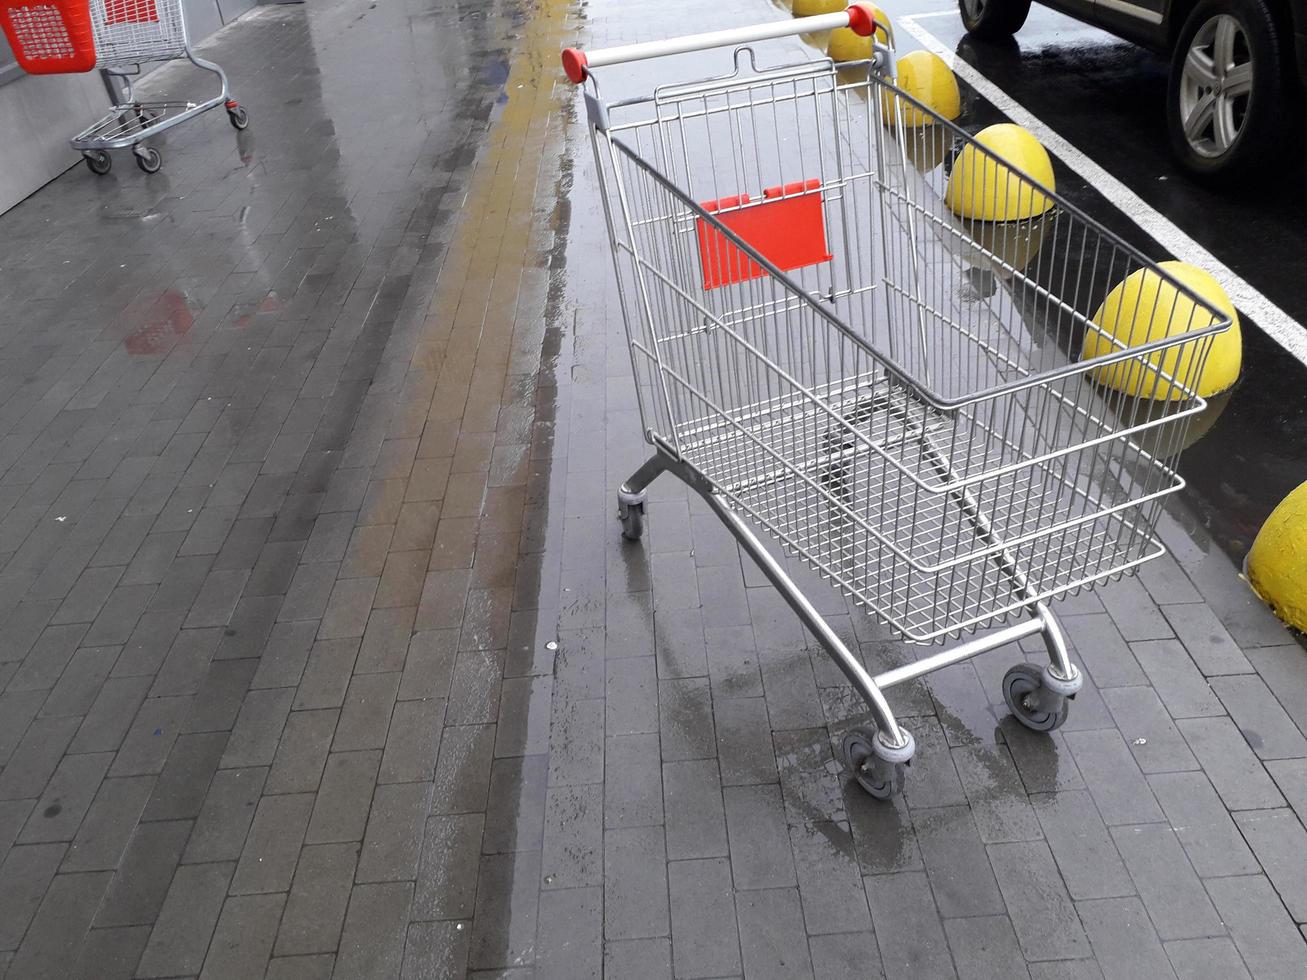 des chariots pour les produits d'épicerie se tiennent près d'un supermarché dans la rue photo